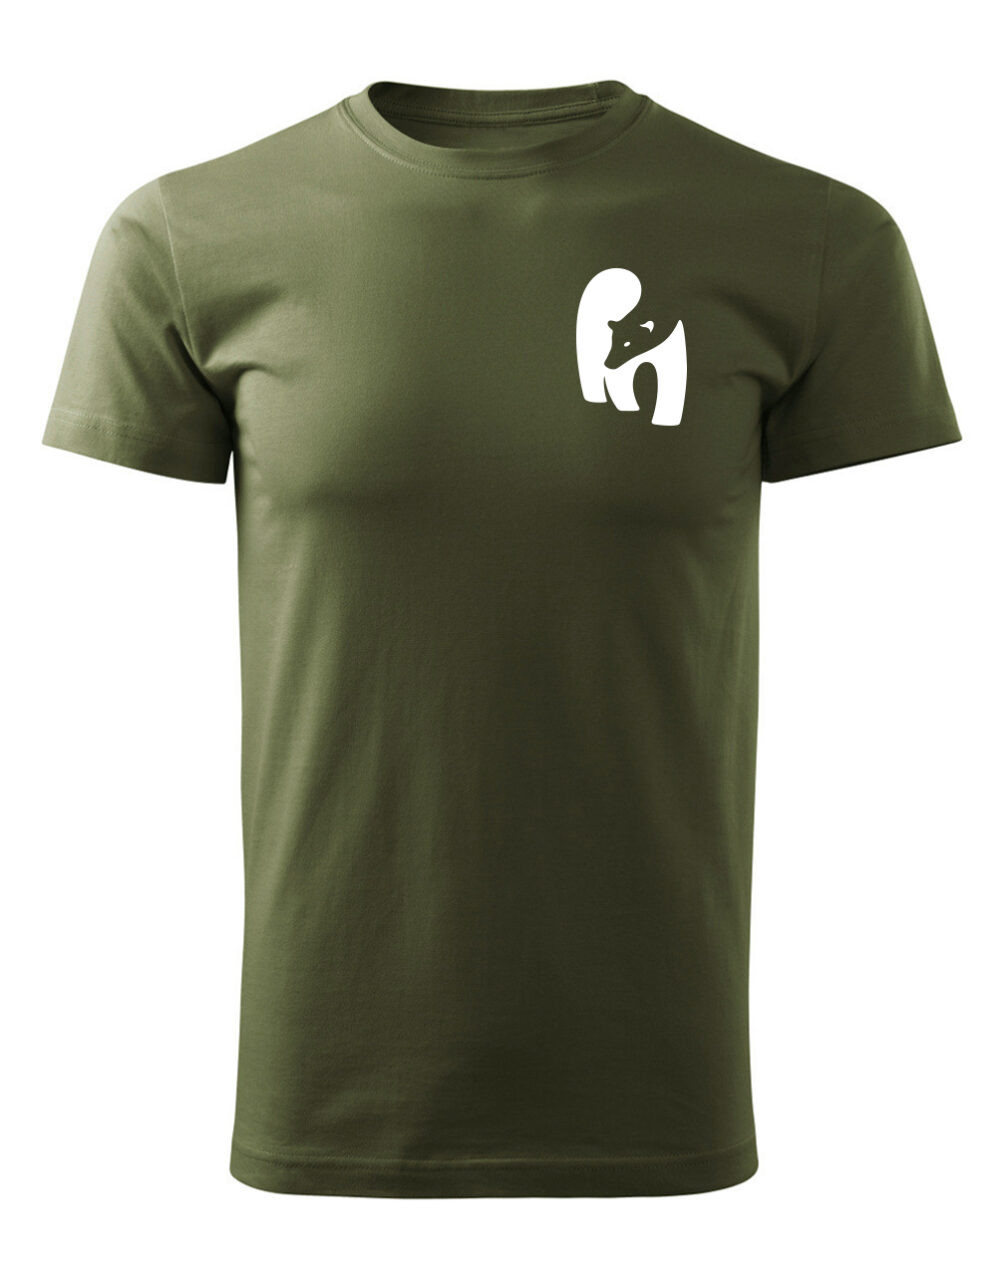 Pánské tričko s potiskem Medvěd vojenská zelená